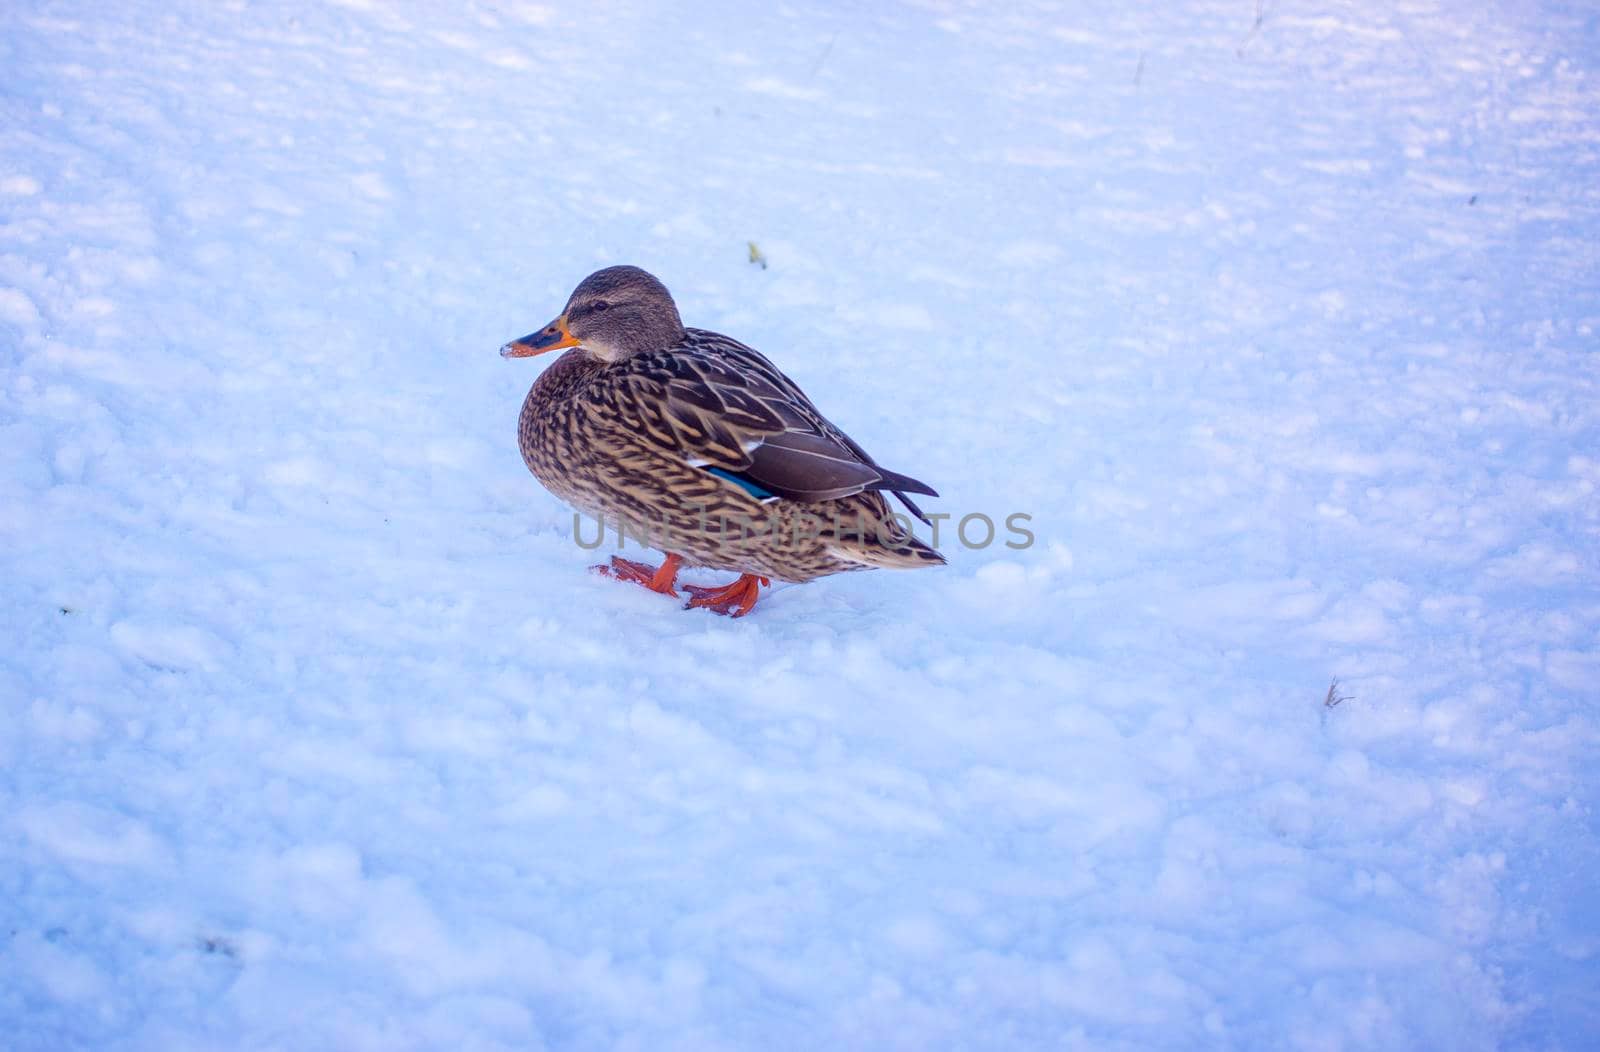 Female Mallard Duck Walking on Ice in Winter with copy space